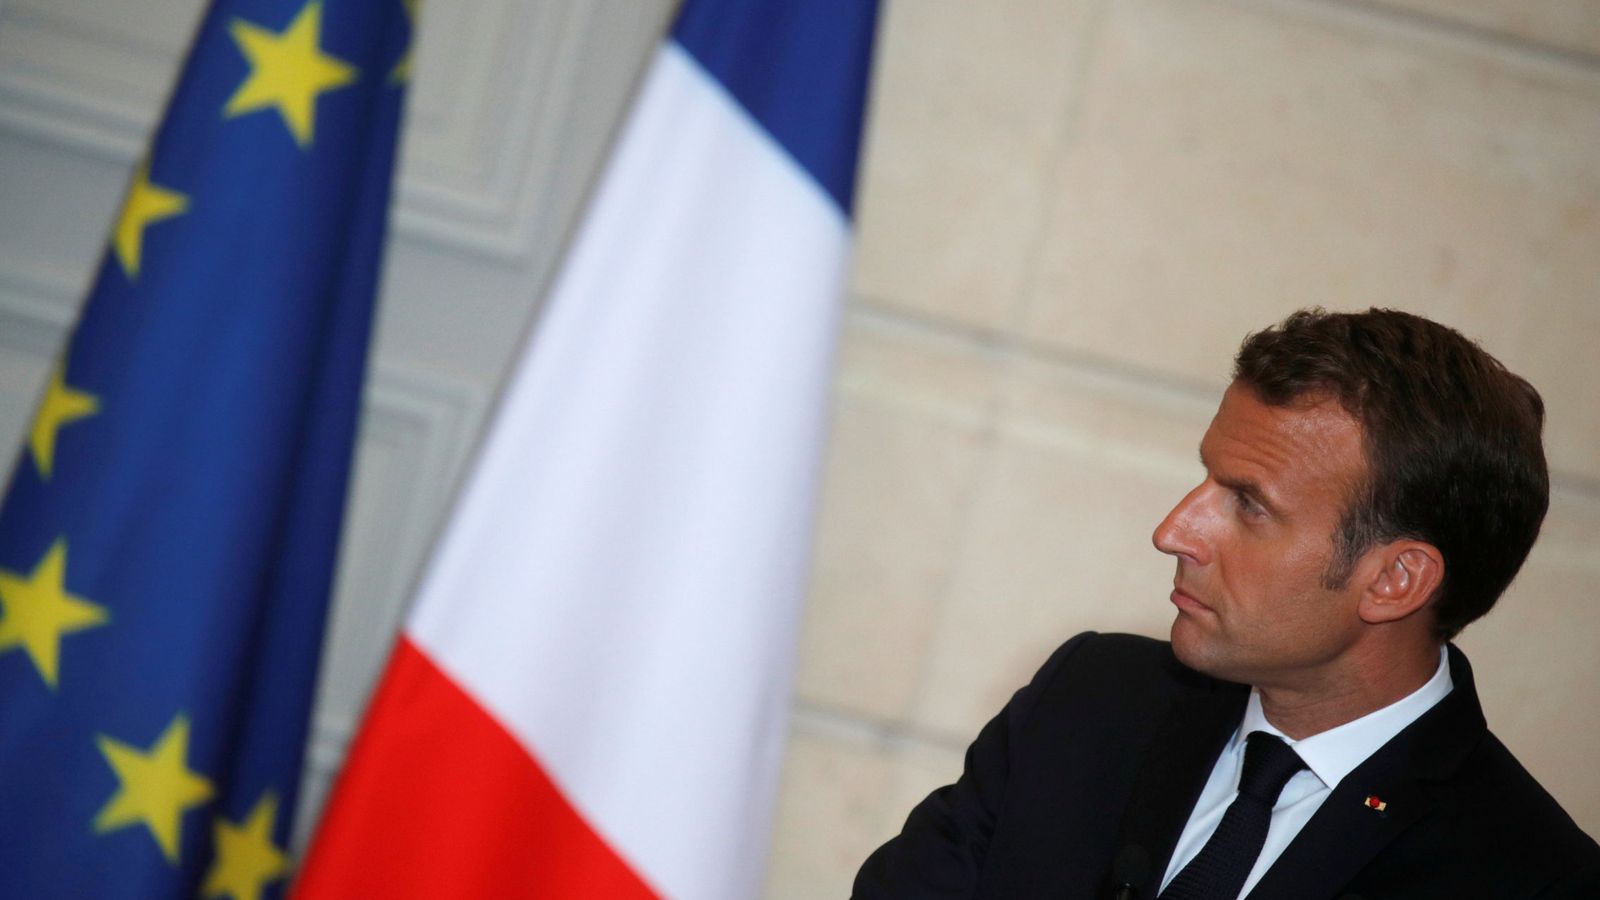 Foto: Emmanuel Macron durante una rueda de prensa en el Elíseo, el 5 de junio de 2018. (Reuters)